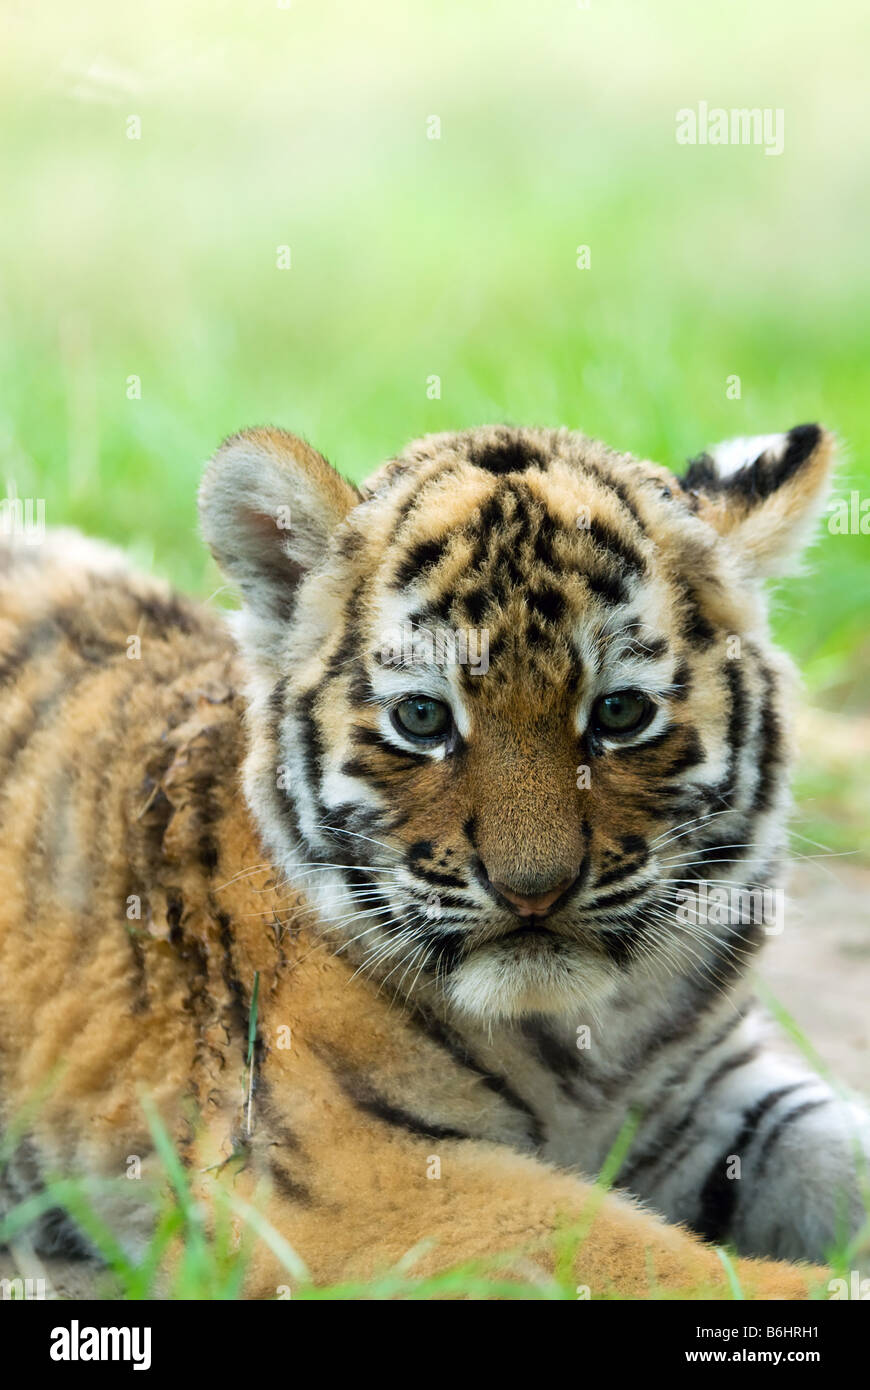 Tiger cubs at play stock photo. Image of tiger, siberian - 16819874